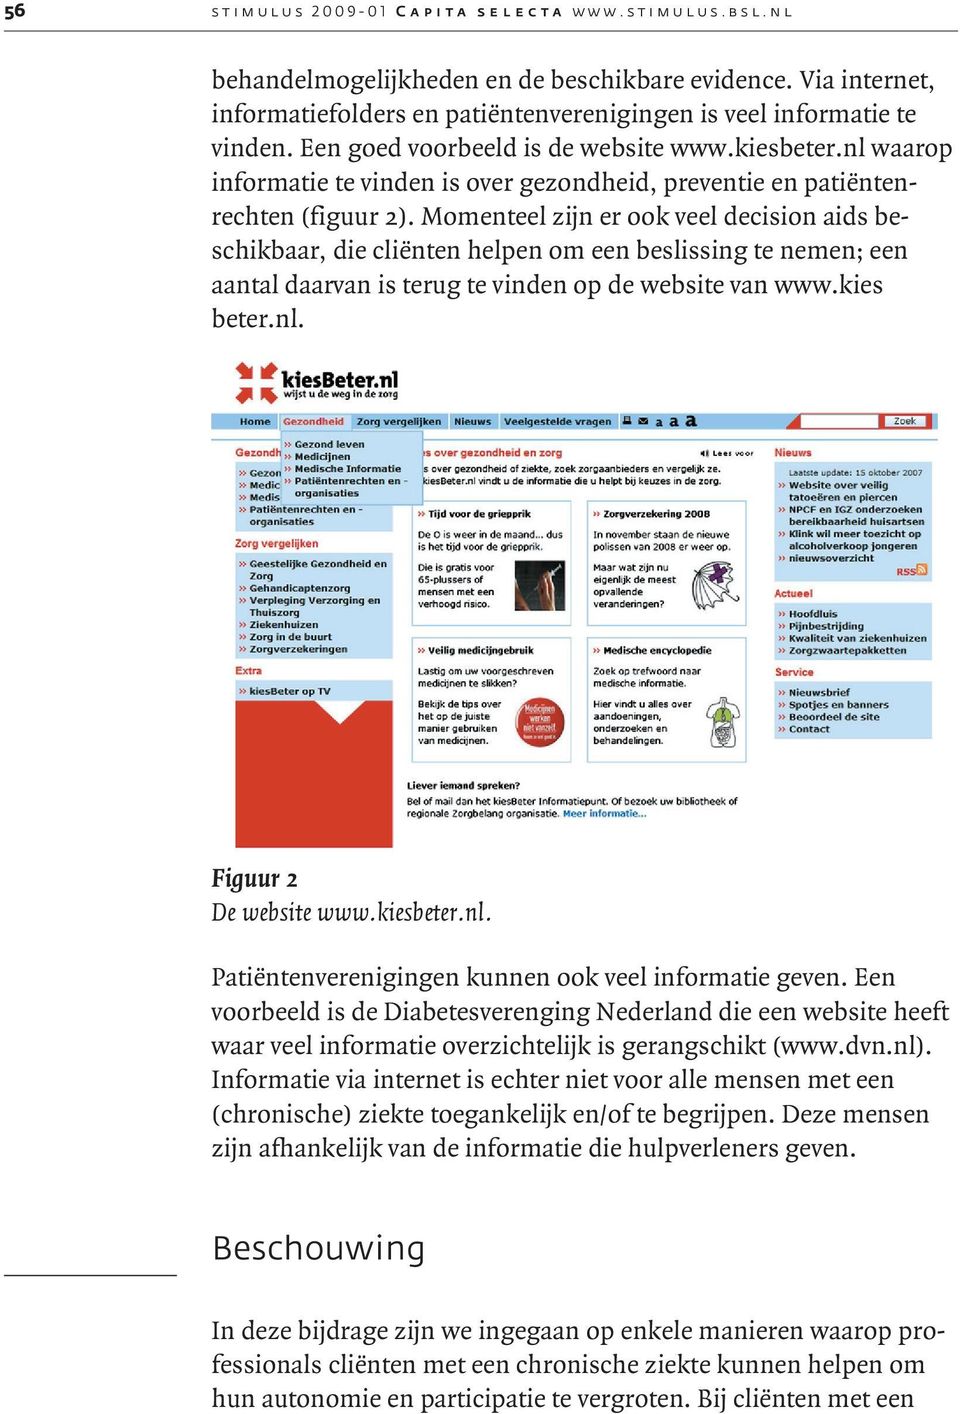 Momenteel zijn er ook veel decision aids beschikbaar, die cliënten helpen om een beslissing te nemen; een aantal daarvan is terug te vinden op de website van www.kies beter.nl.